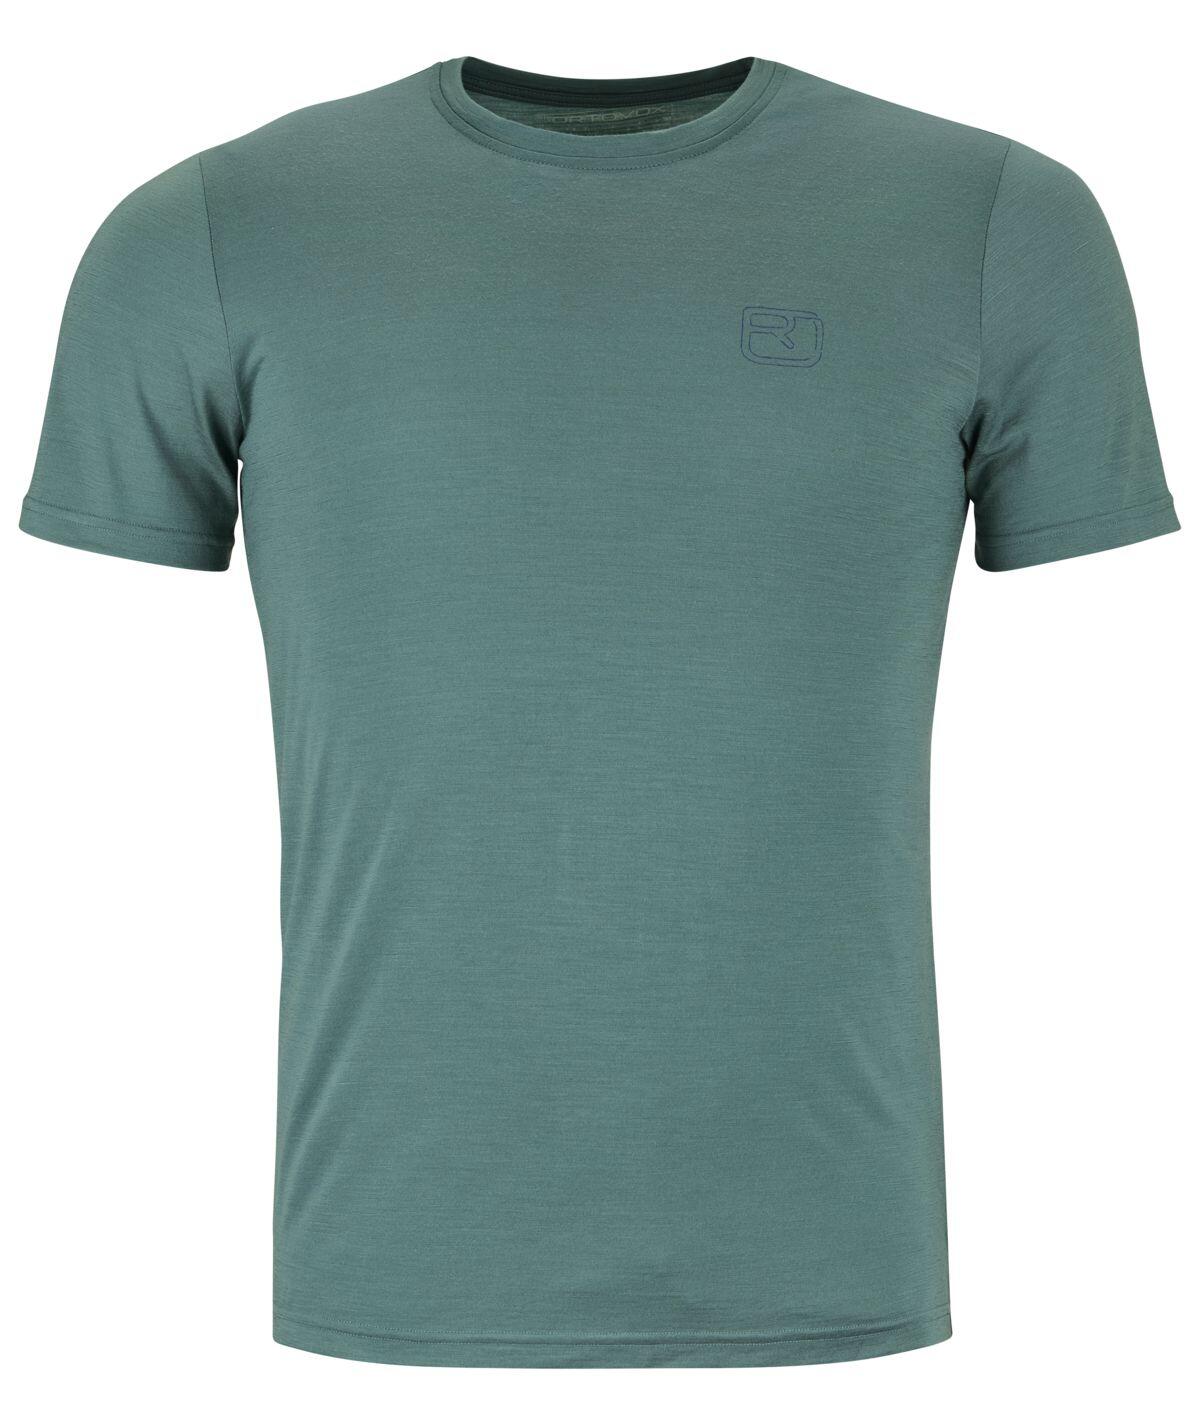 Ortovox 150 Cool Ballpen T-shirt Men's Barva: arctic grey, Velikost: S